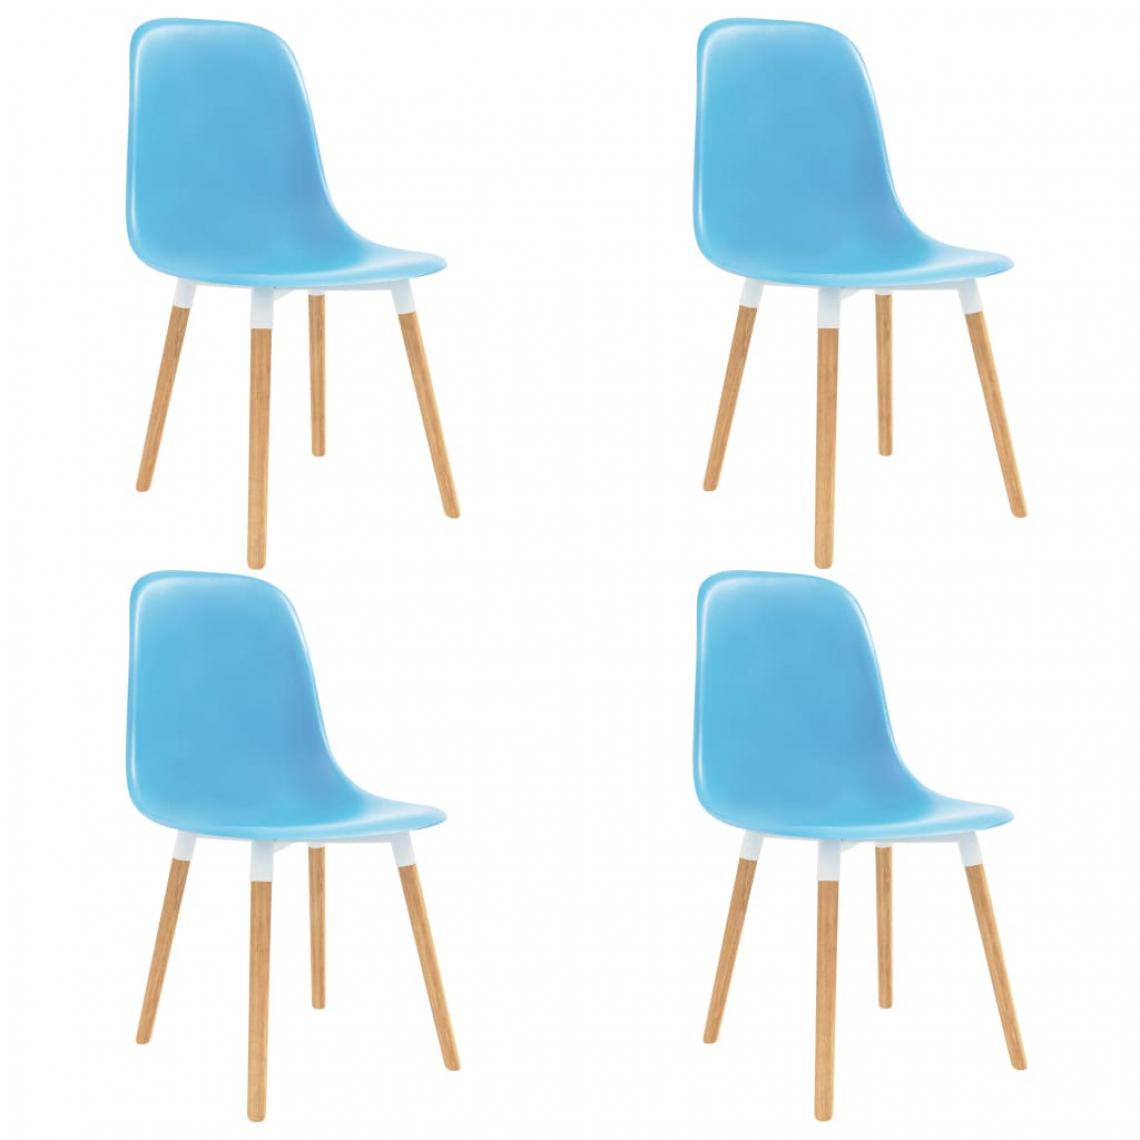 Chunhelife - Chaises de salle à manger 4 pcs Bleu Plastique - Chaises